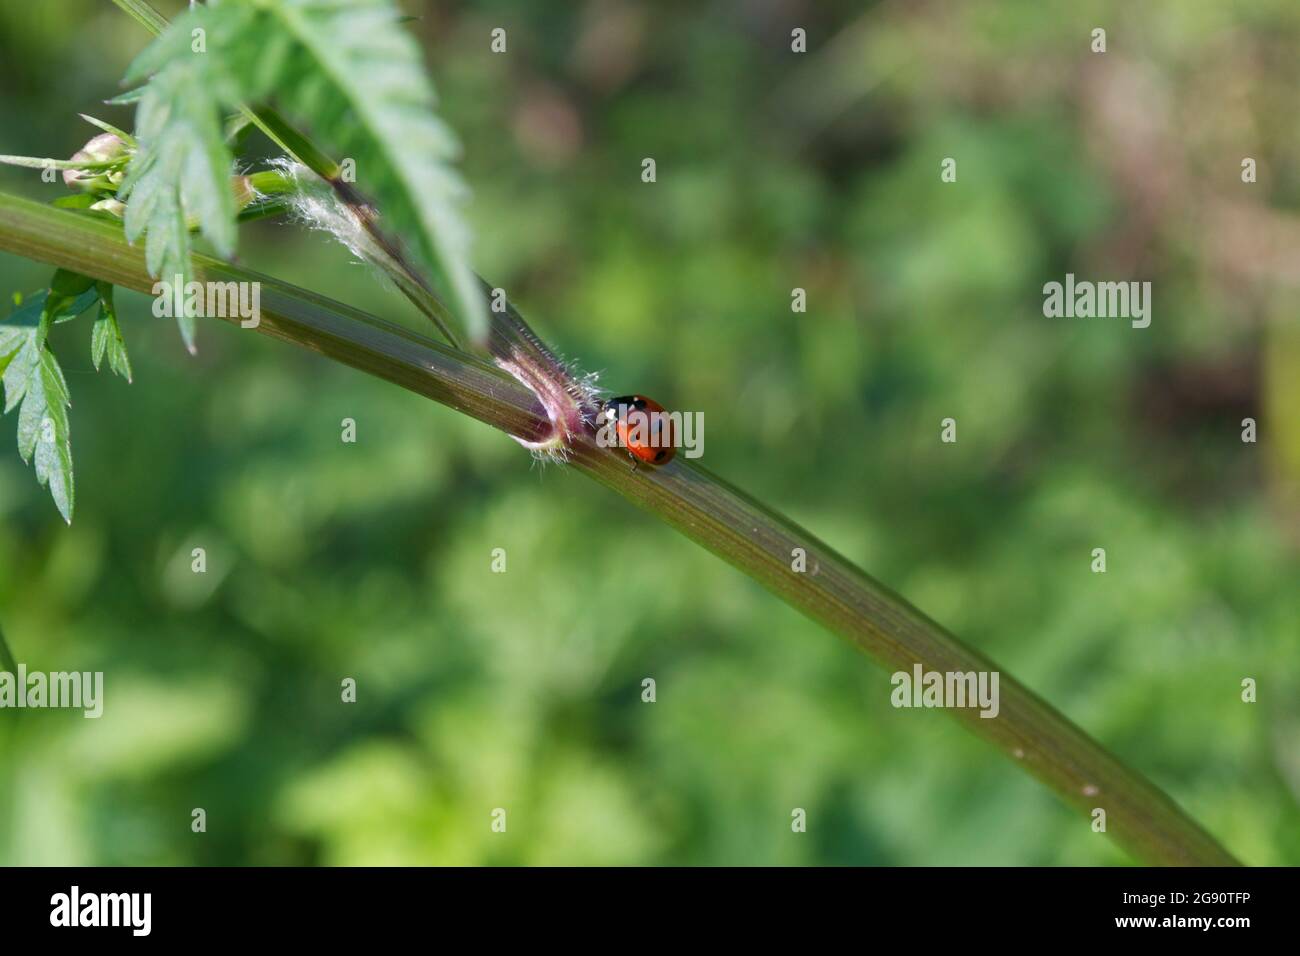 Ein Marienkäfer mit sieben Flecken oder Marienkäfer (Coccinella septempunctata), der den grünen Stamm einer jungen Pflanze hochklettert; Blätter, kleine Haare im Fokus mit einem grünen Bac Stockfoto